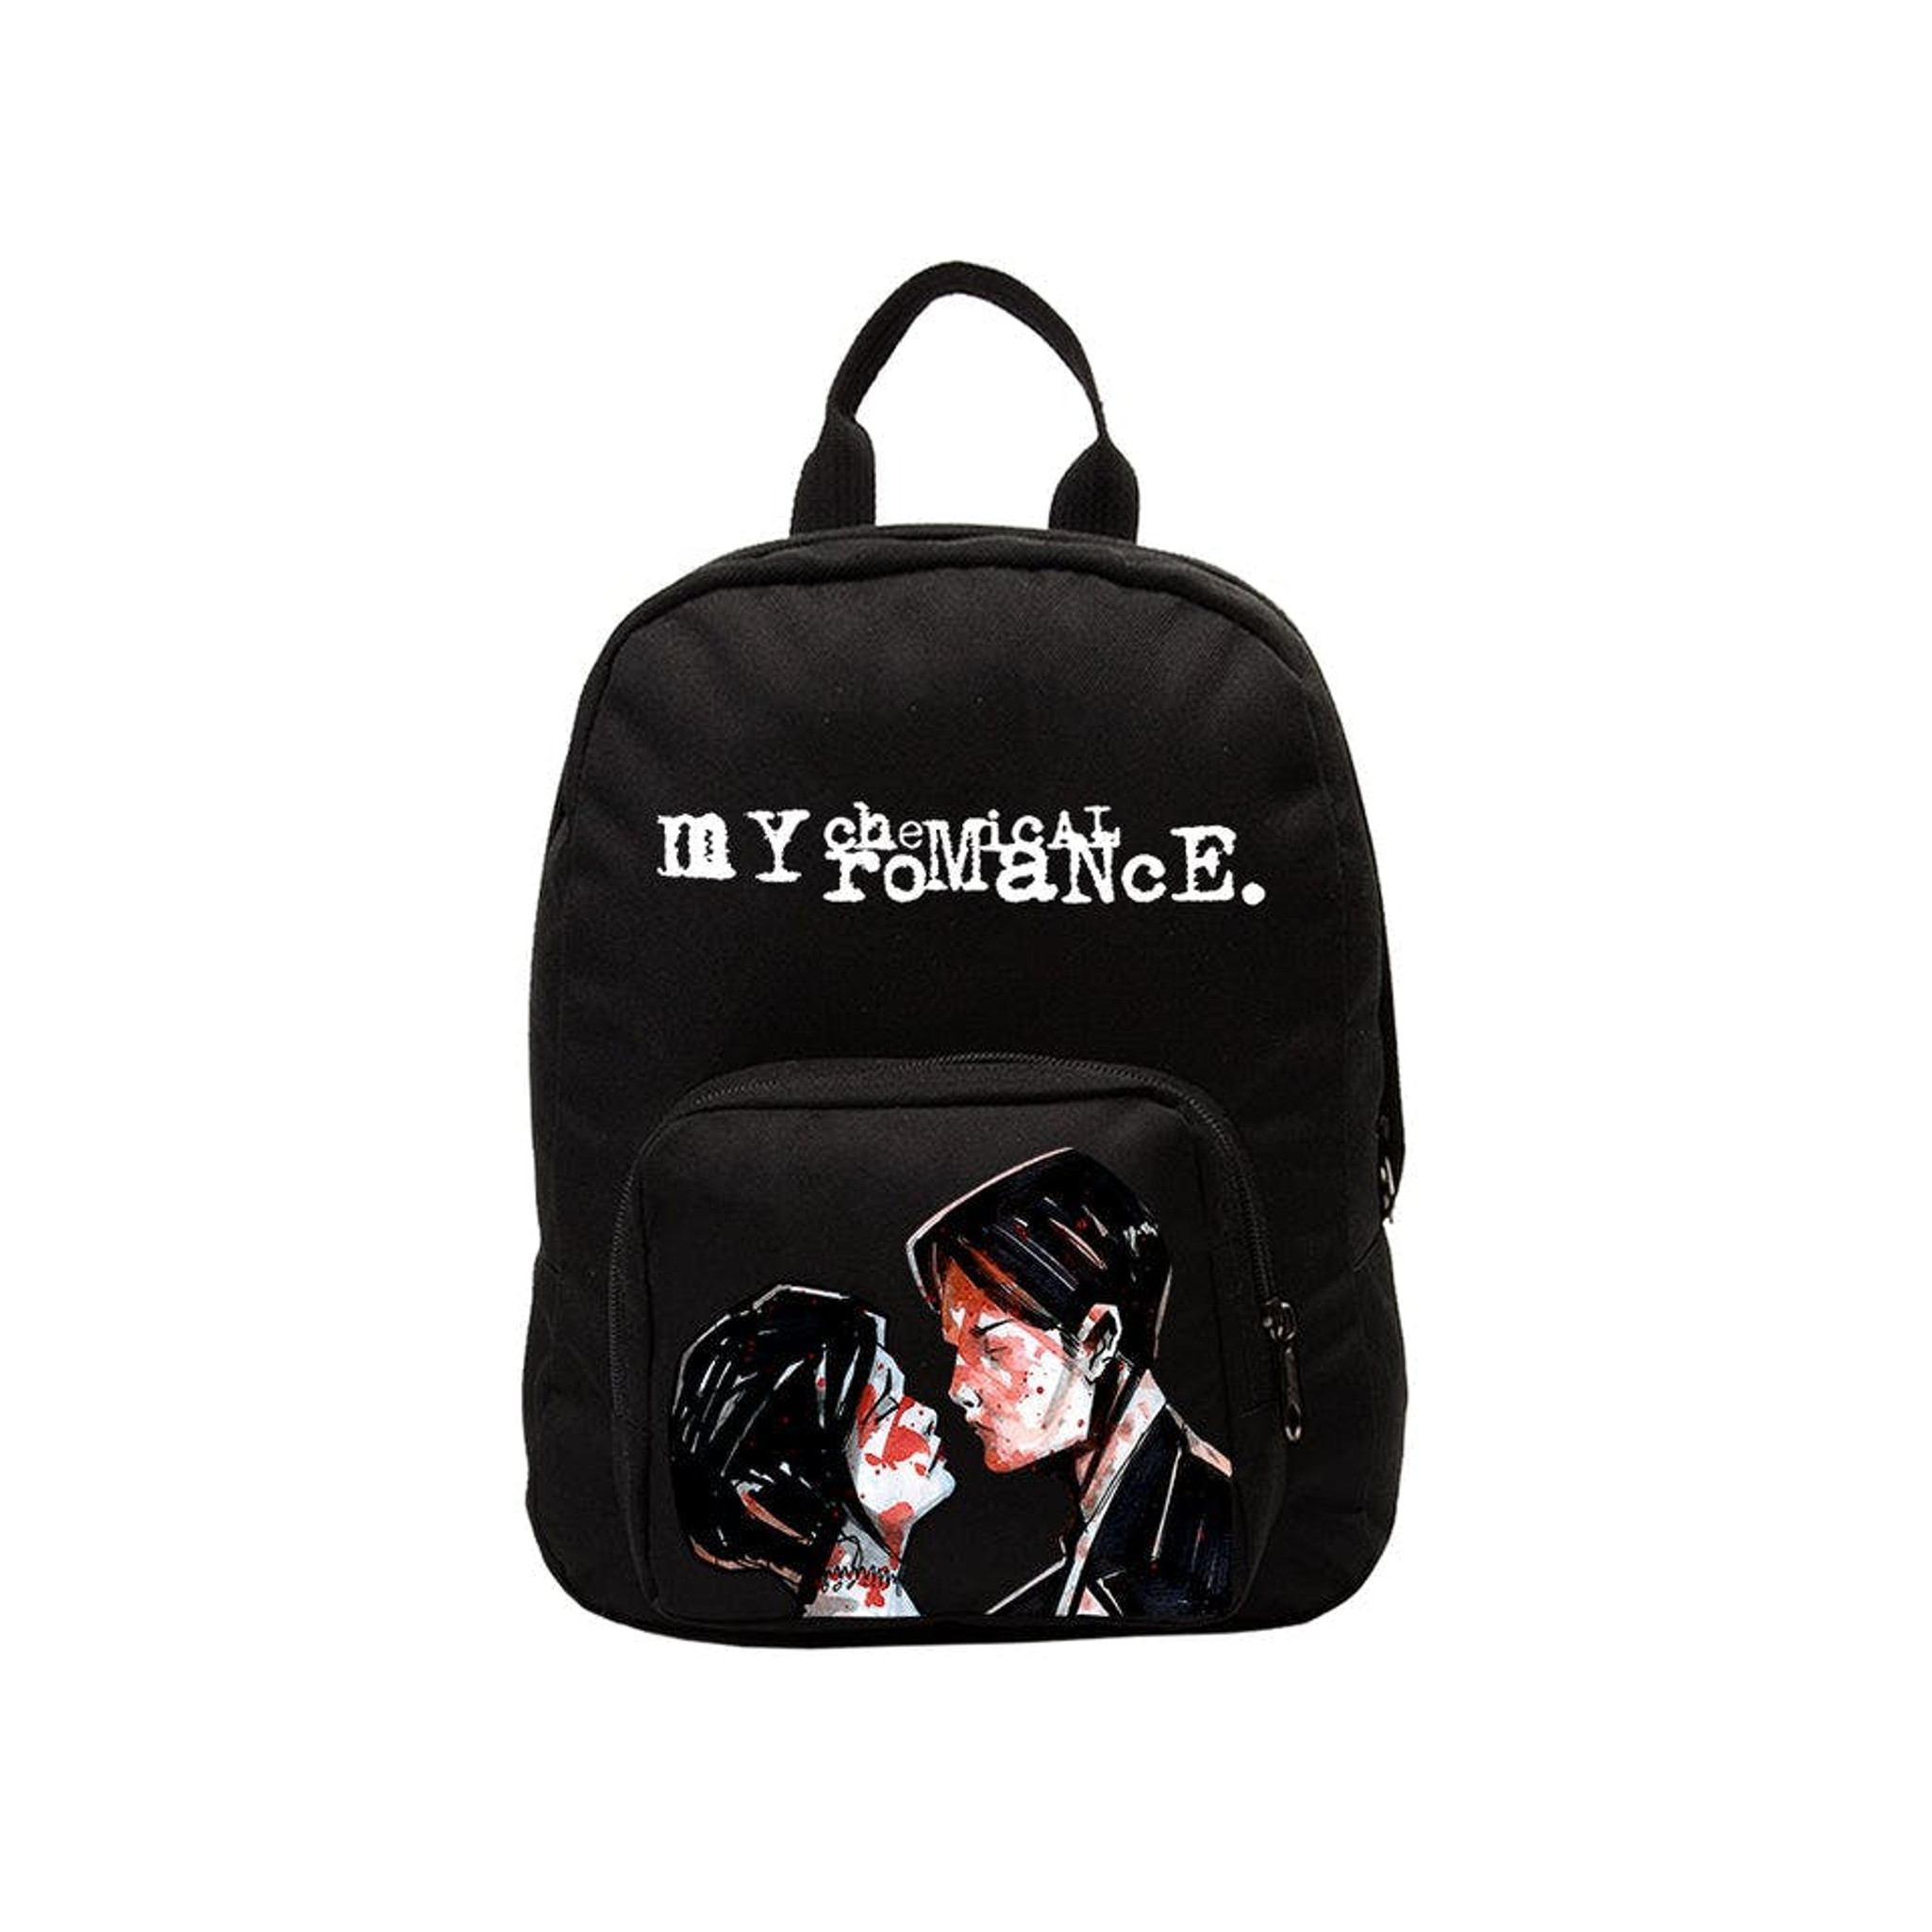 My Chemical Romance Mini Backpack - Three Cheers